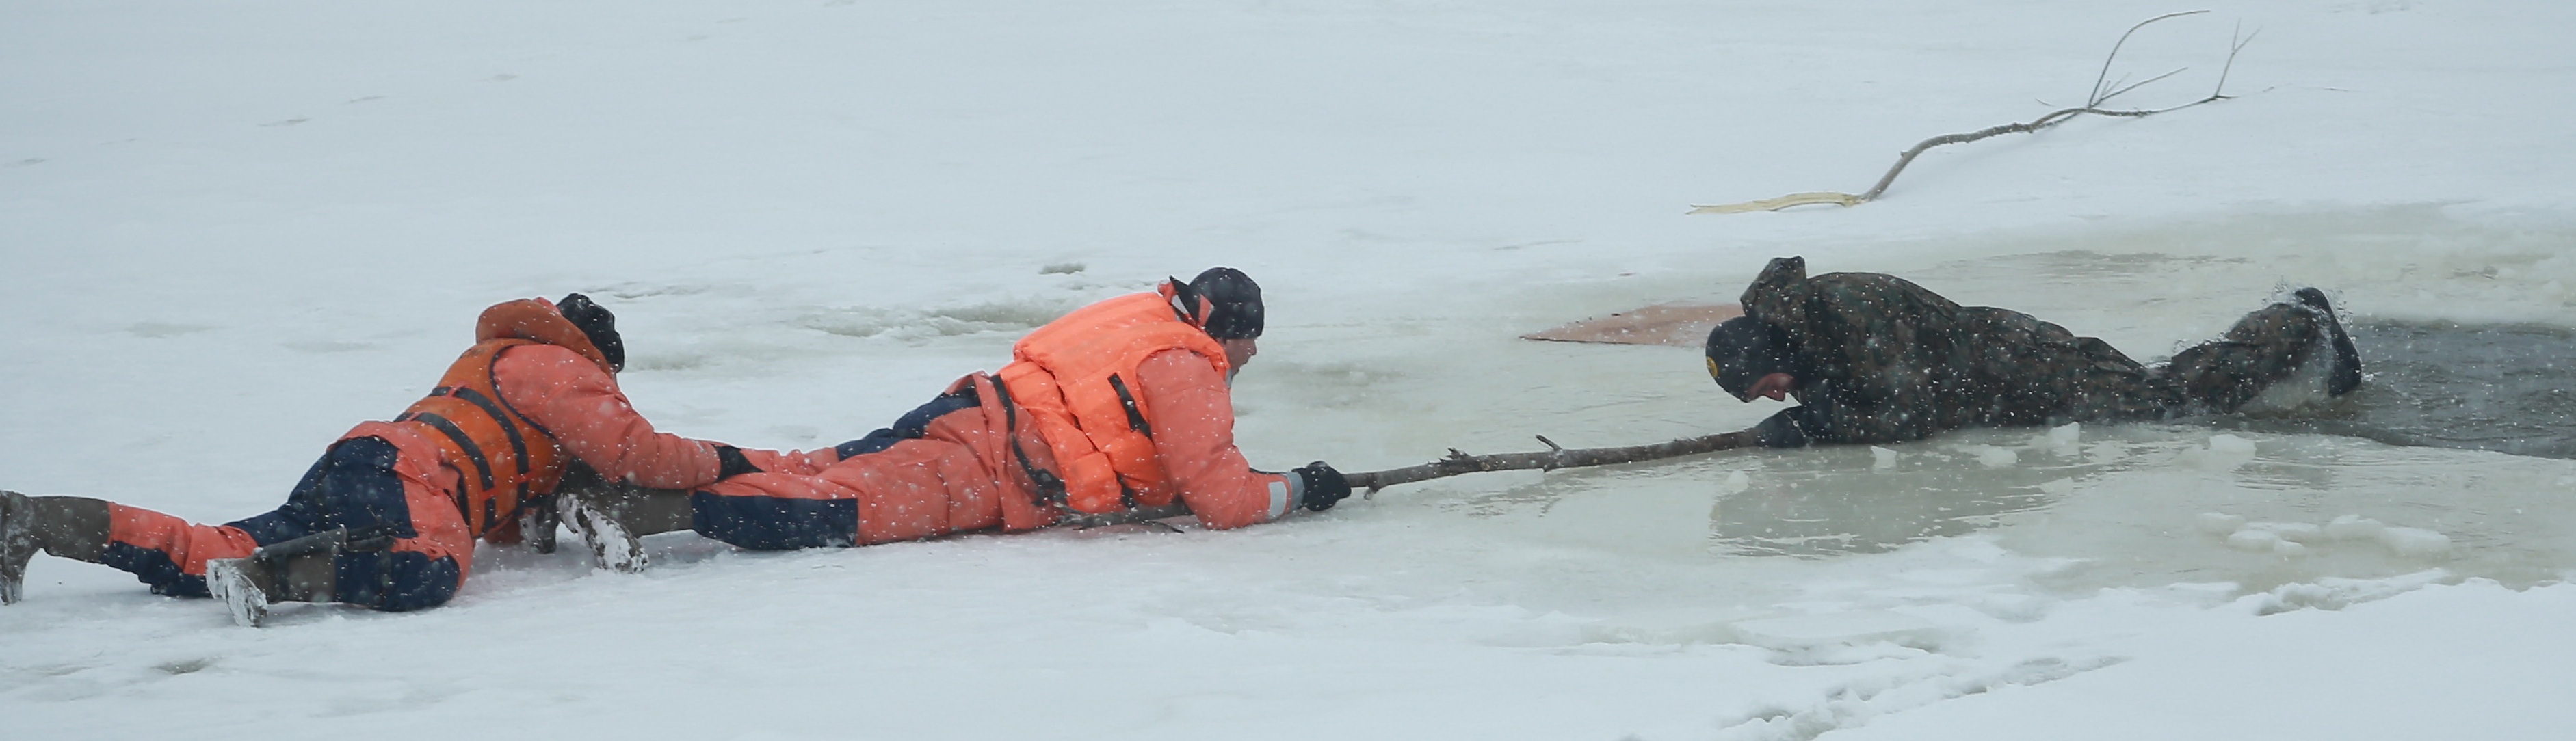 Случай спасения человека. Спасение человека провалившегося под лед. Человек провалился под лед. Спасение рыбаков со льда. Спасение утопающих на льду.